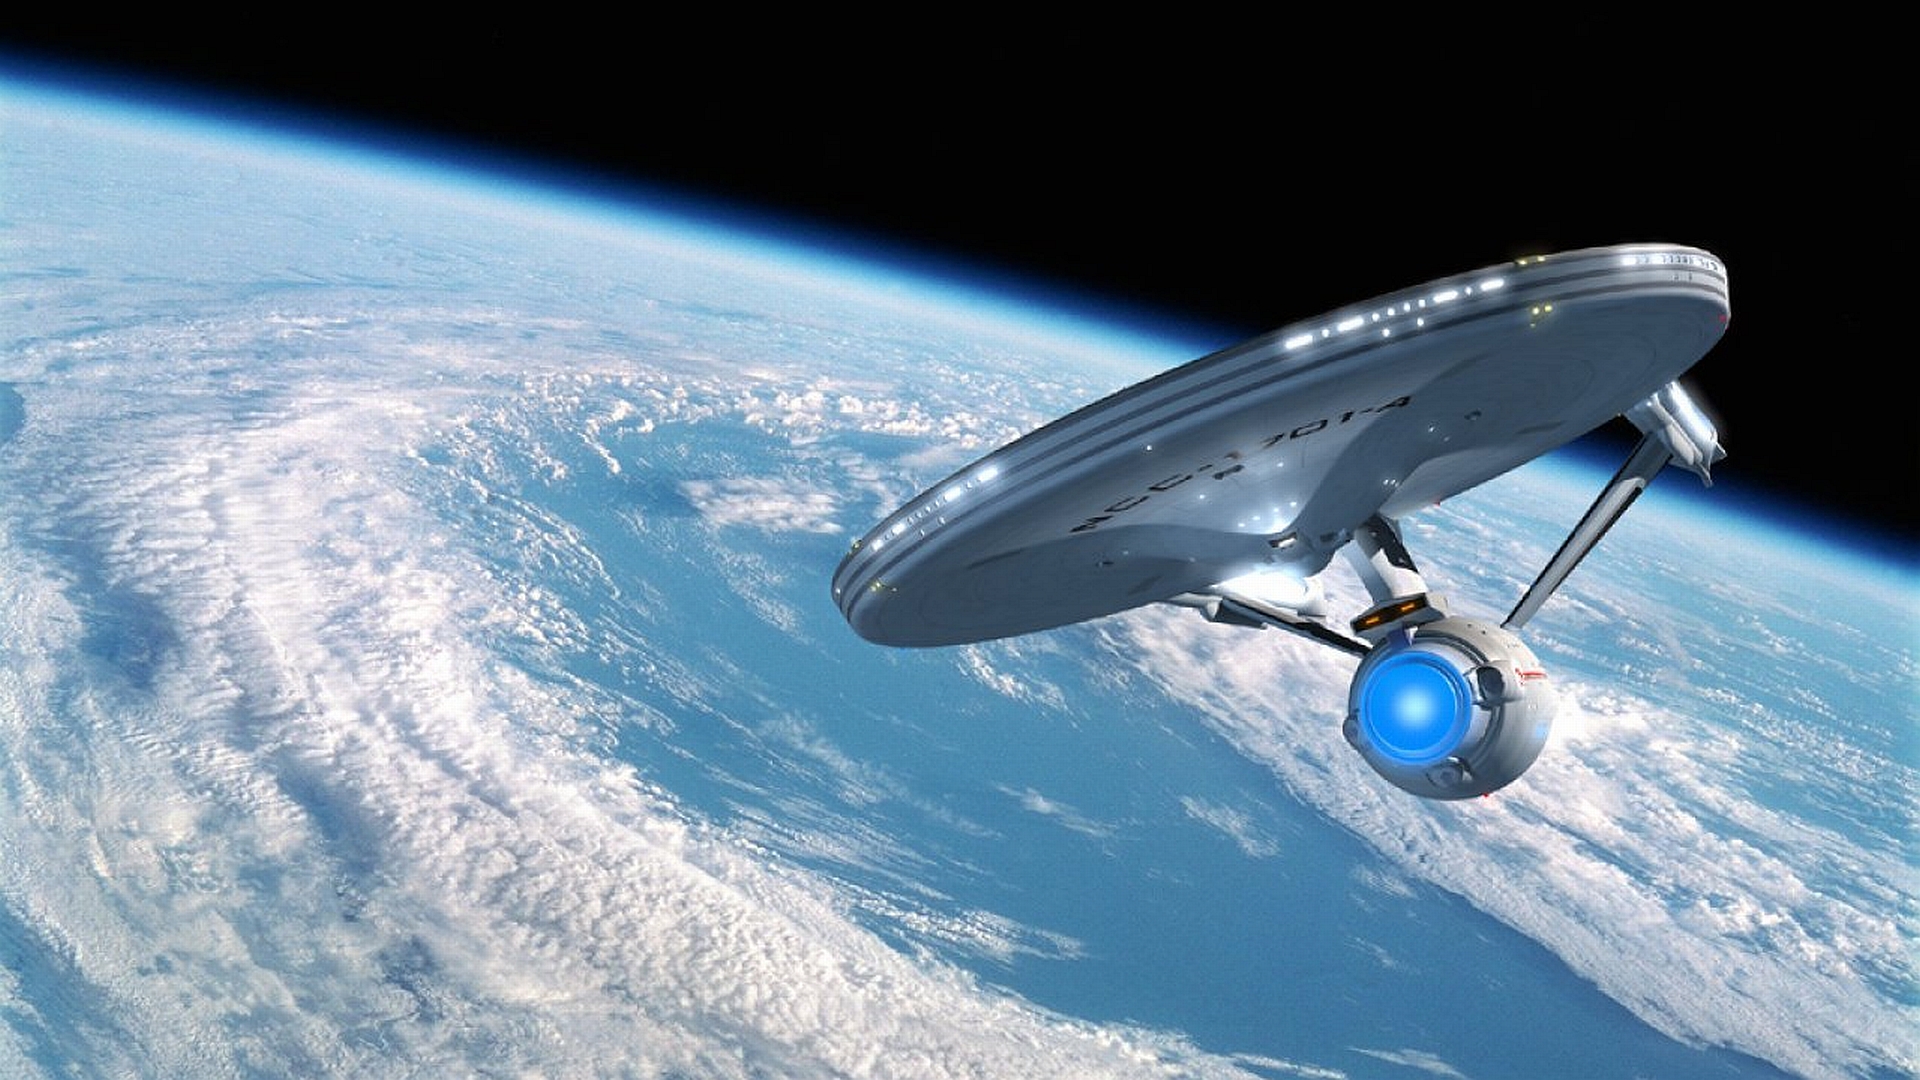 Sci Fi Star Trek Wallpaper Desktop For